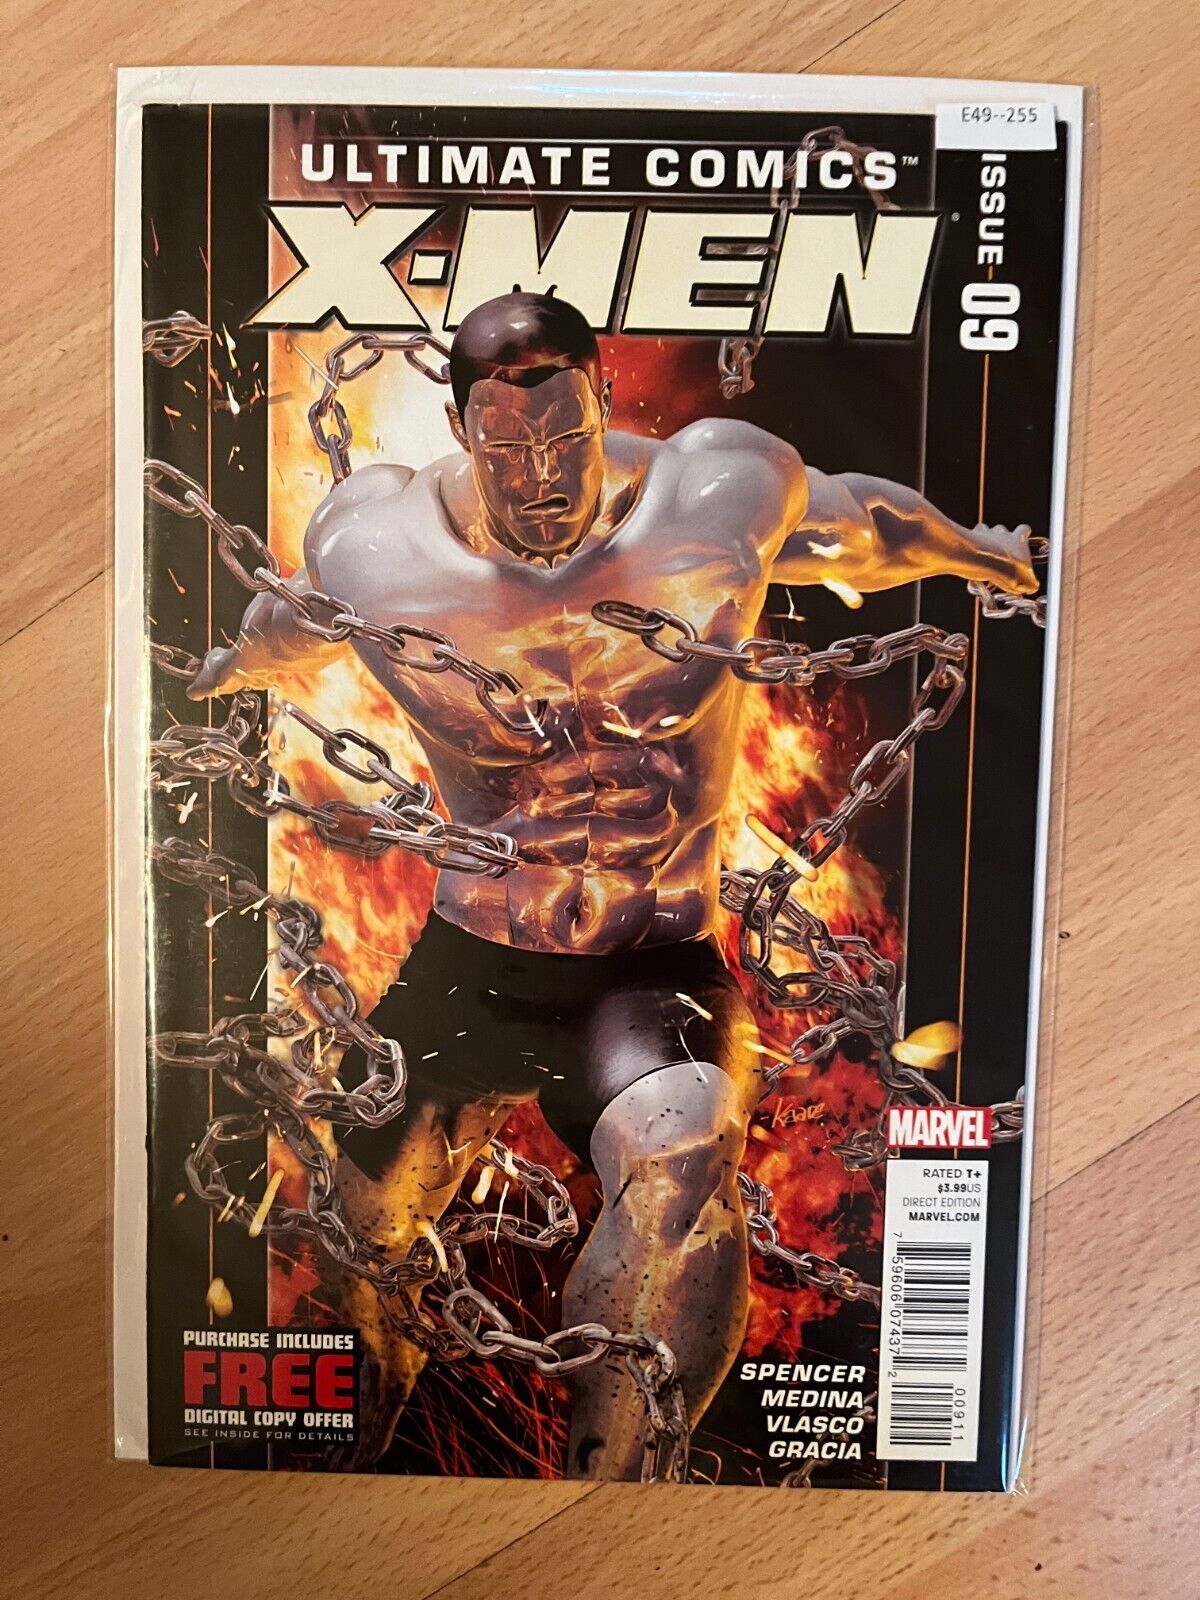 Ultimate Comics X-Men 9 Marvel Comics 9.0 E49-255